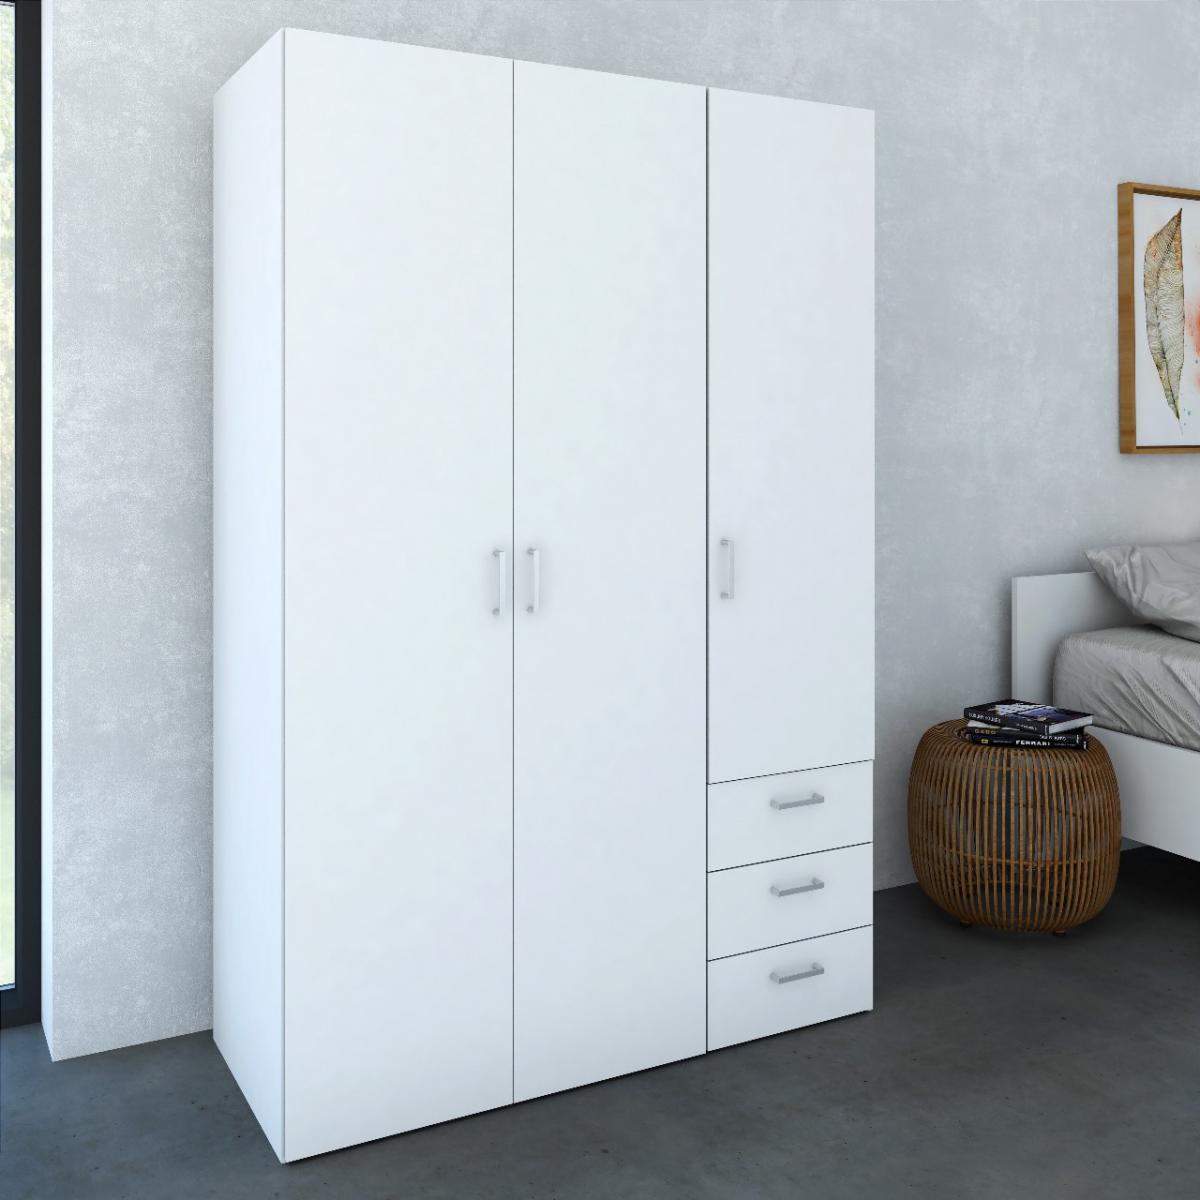 Armoire Alter Armoire avec trois portes battantes et trois tiroirs, couleur blanche, Dimensions 115 x 175 x 49 cm